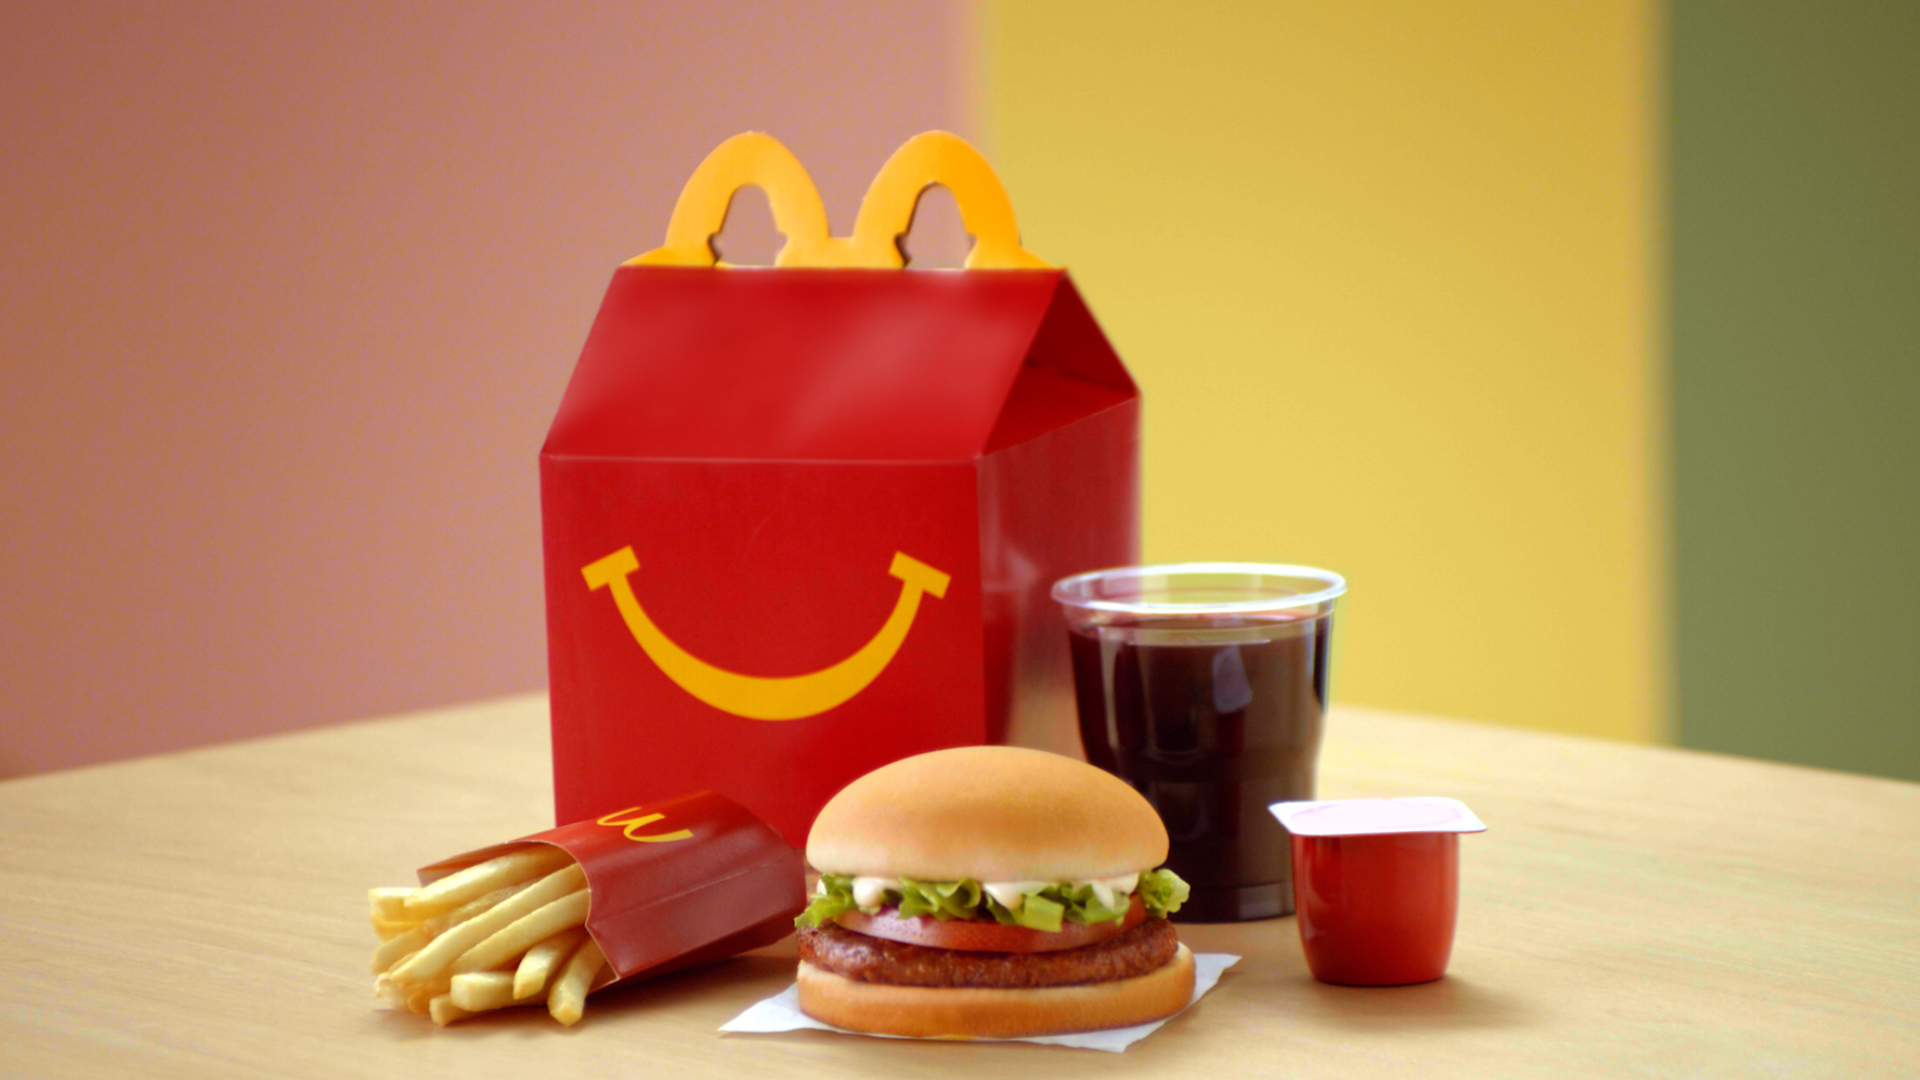 Pensando em ter uma franquia da McDonald’s? Confira agora todas as informações sobre adquirir uma loja da grande rede de fast food